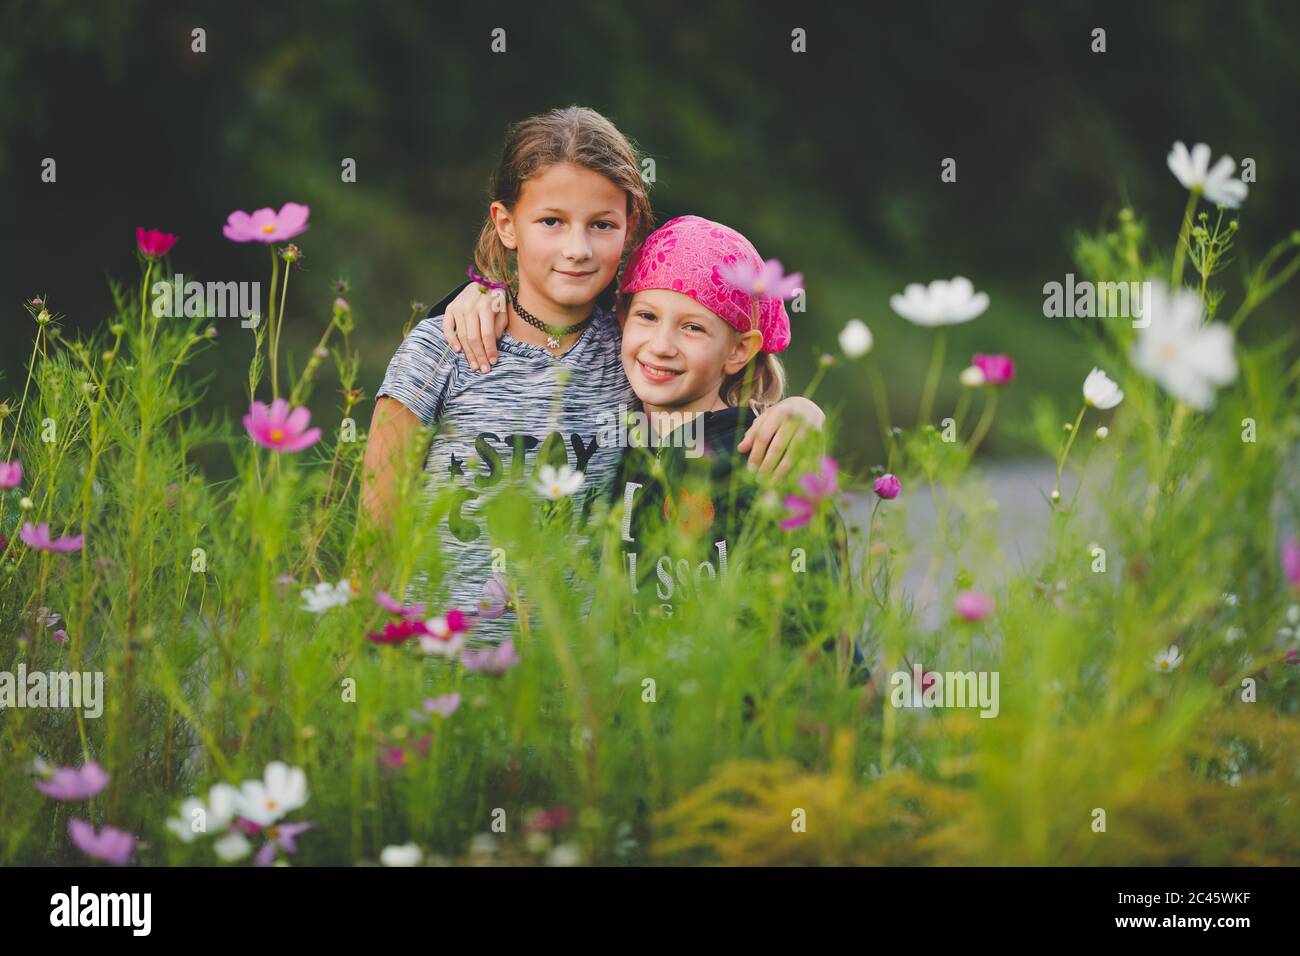 Porträt von zwei jungen Mädchen in wilden Blumenwiese Blick auf die Kamera Stockfoto